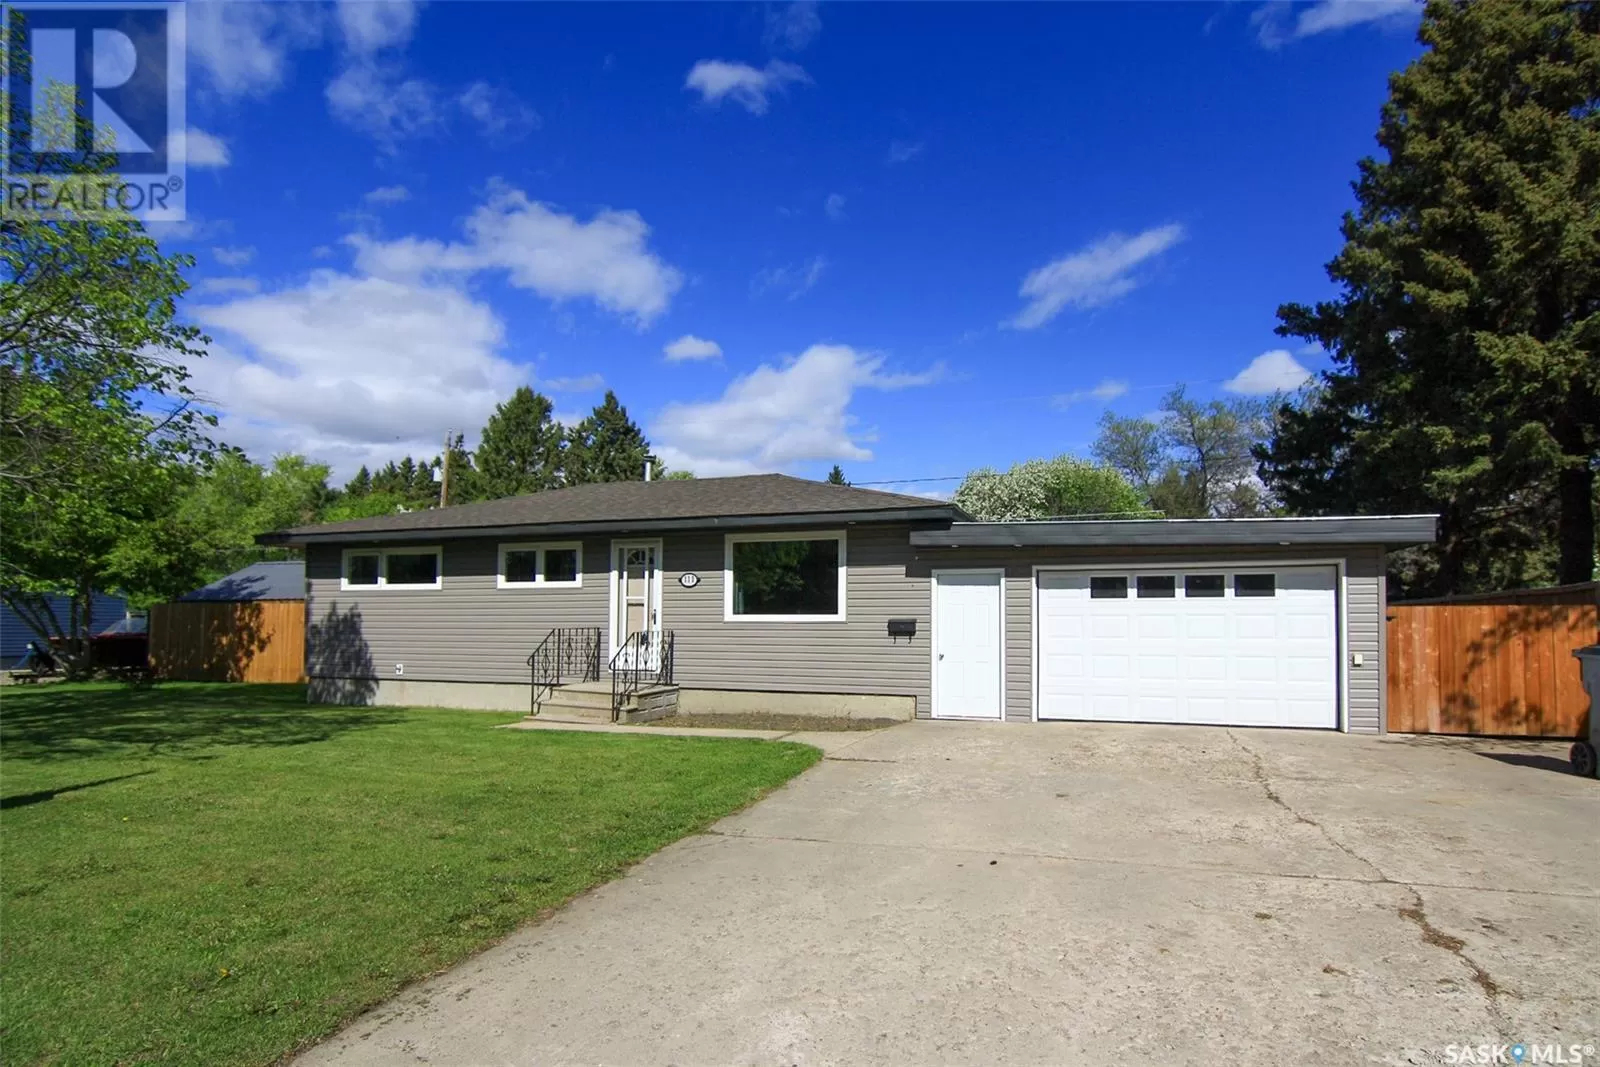 House for rent: 111 Barbour Avenue, Yorkton, Saskatchewan S3N 2H8